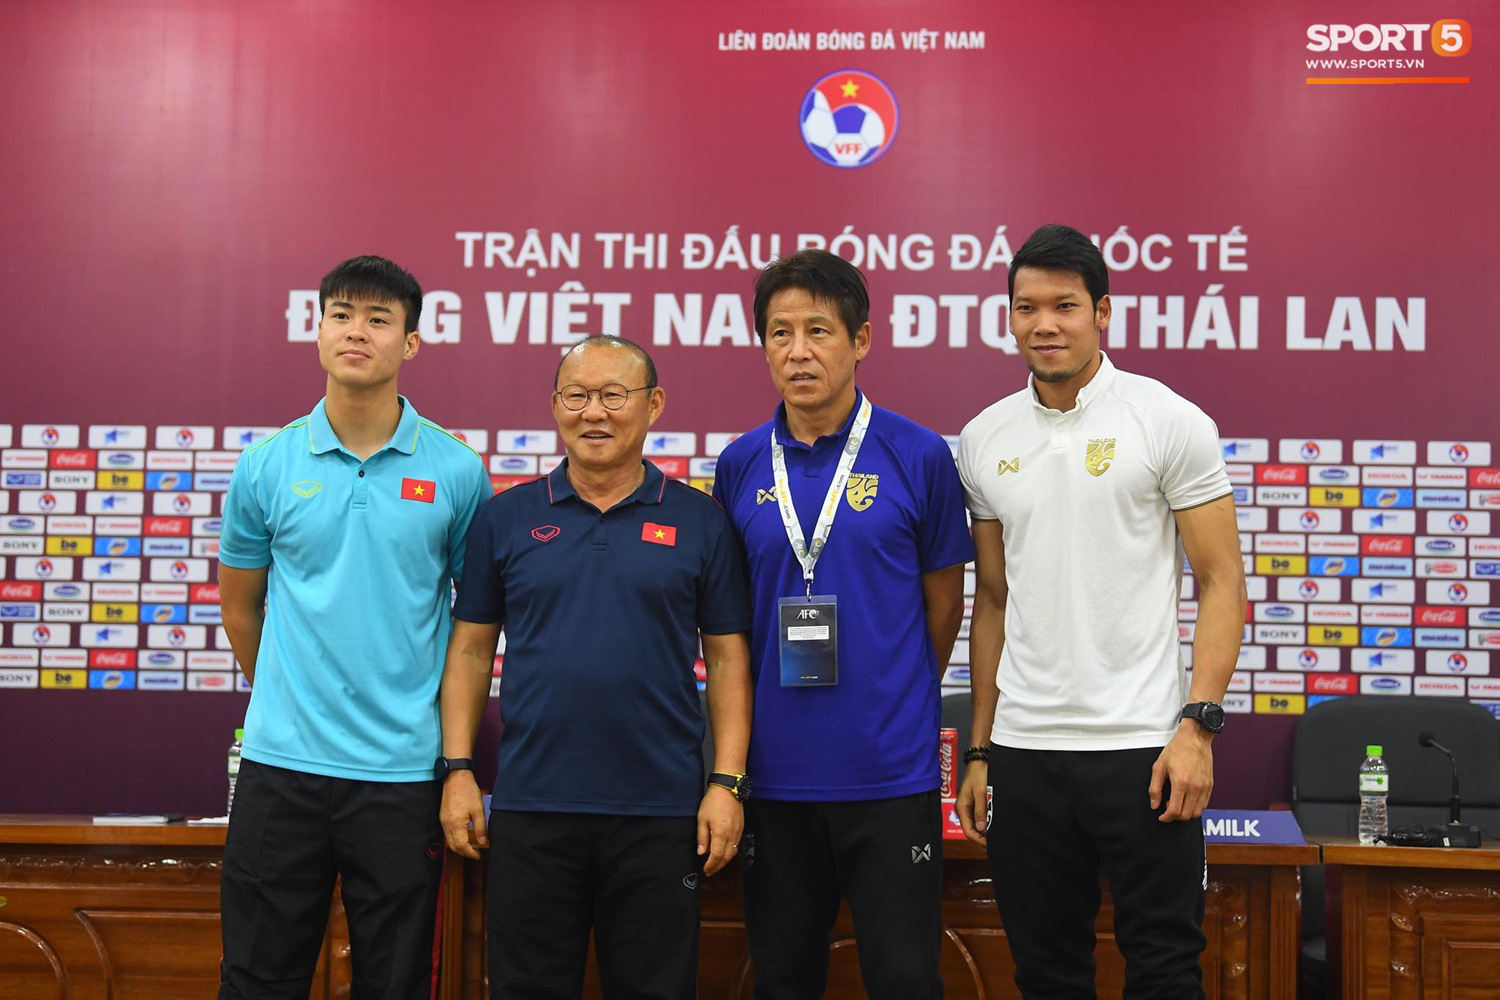 HLV Park Hang-seo: Quang Hải nhận được lời mời từ CLB Tây Ban Nha trước trận đấu Thái Lan - Ảnh 6.